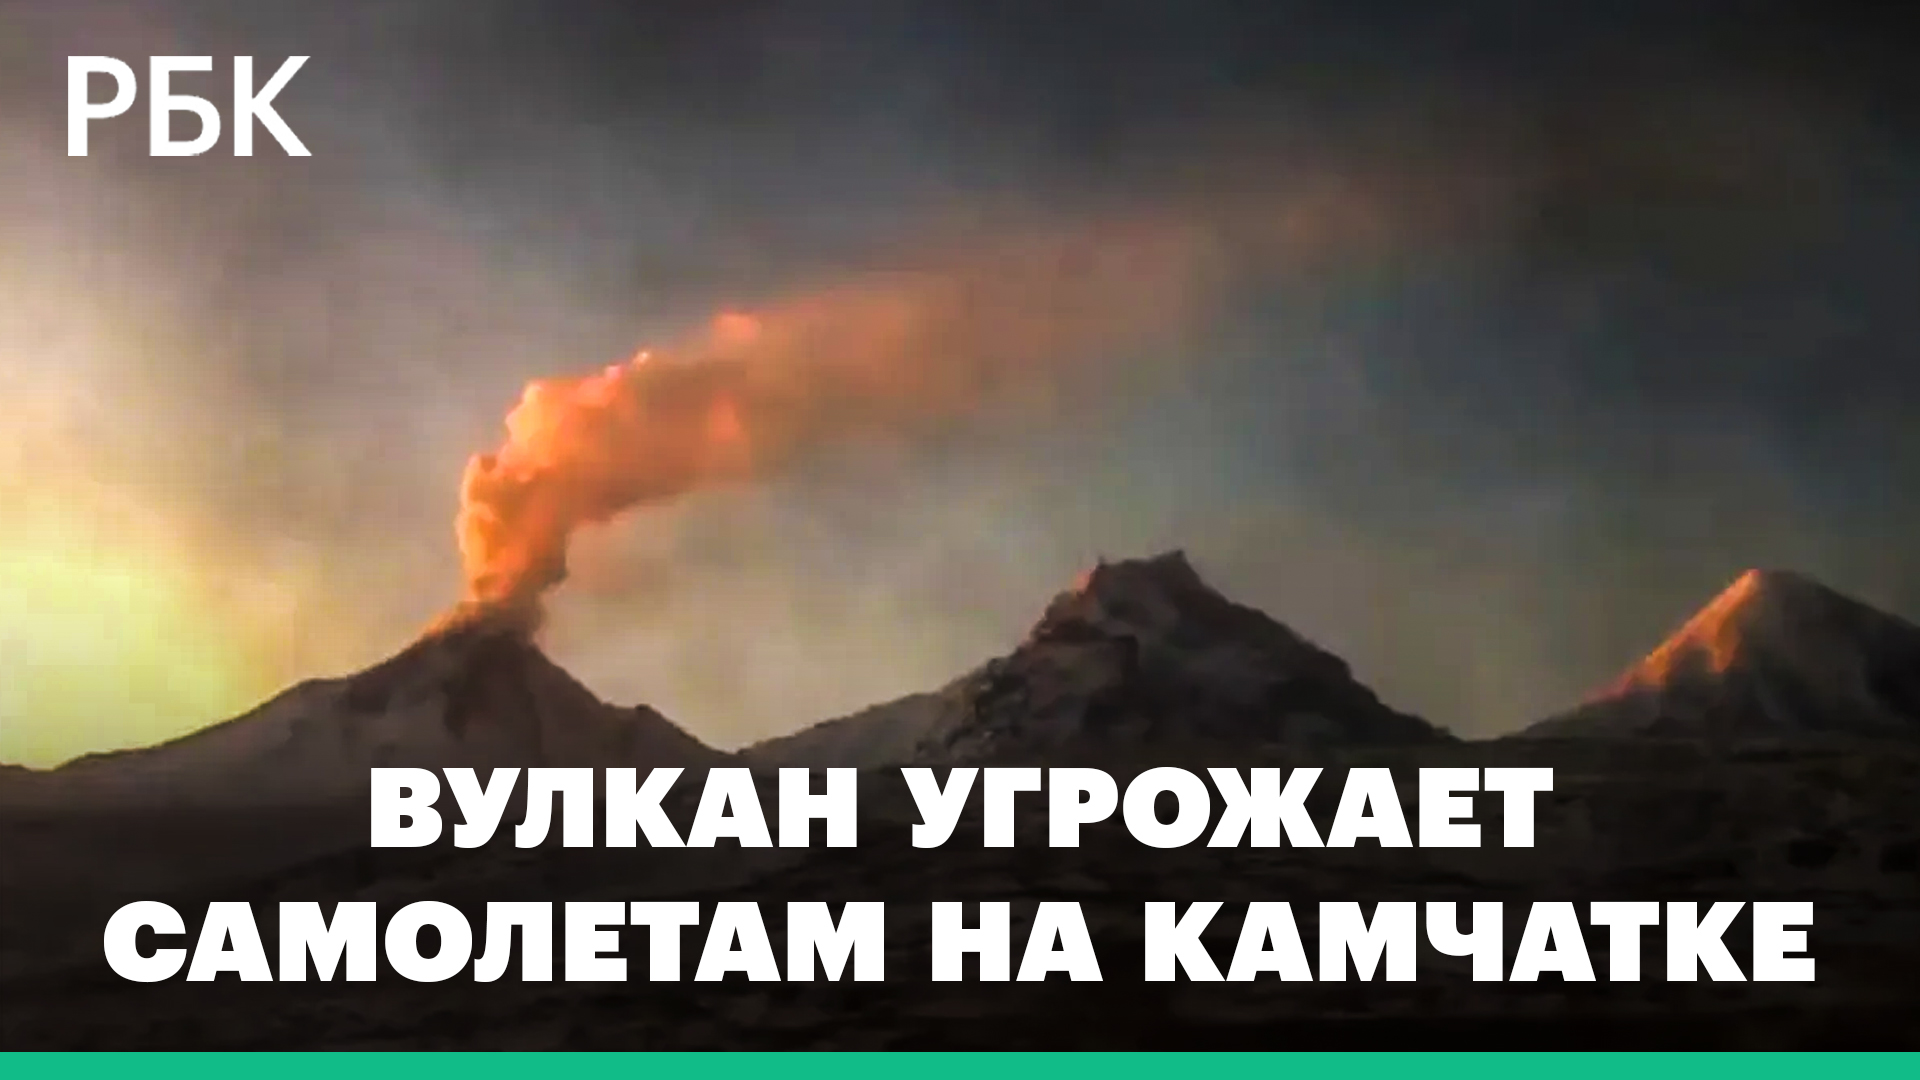 Вулкан Безымянный на Камчатке выбросил столб пепла высотой 10 км. Это опасно для авиации